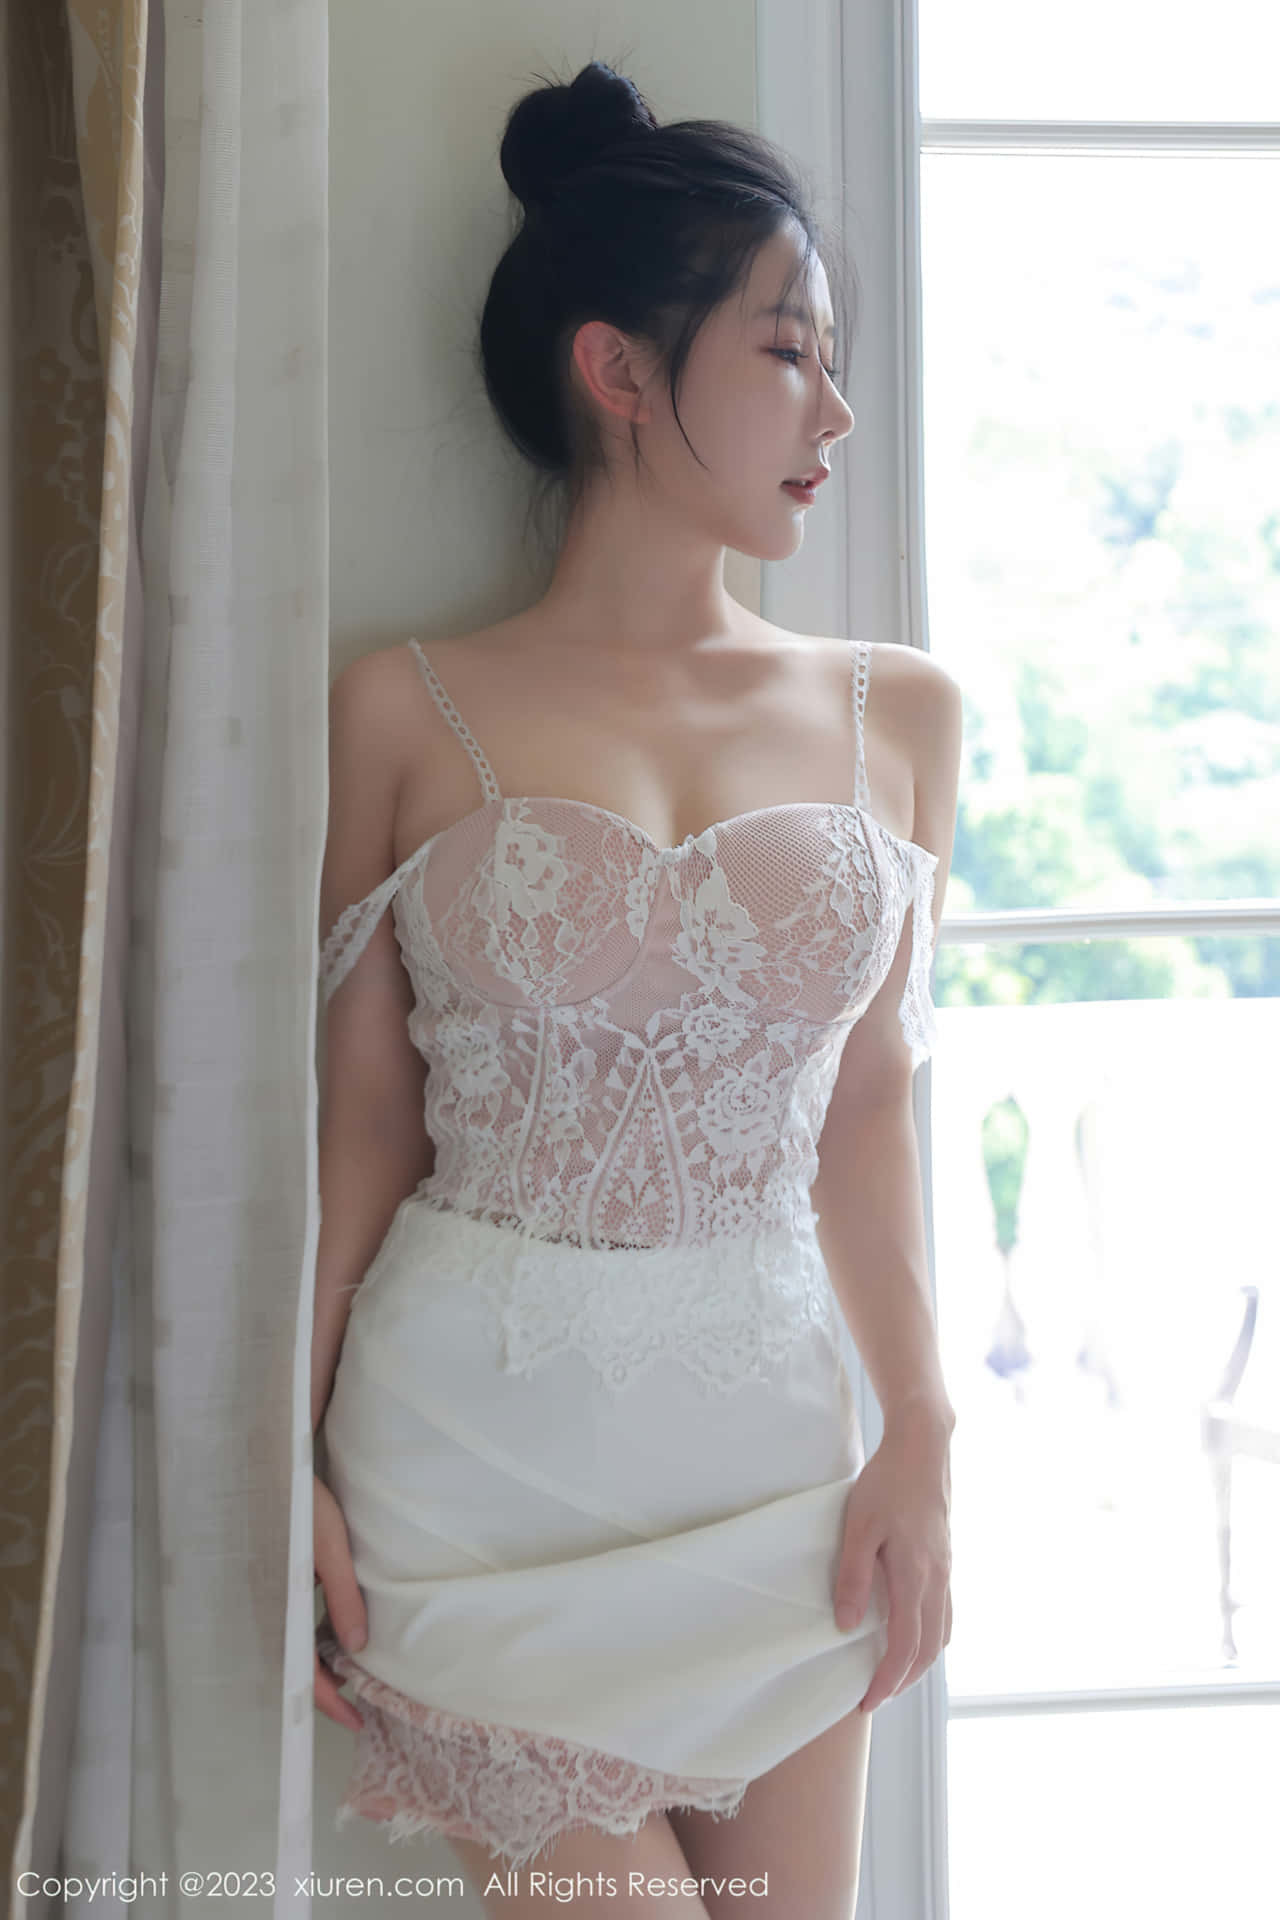 Yin Tiantian의 섹시한 흰색 투투, 빛나는 하얀 안색, 한눈에 보는 섹시한 모습